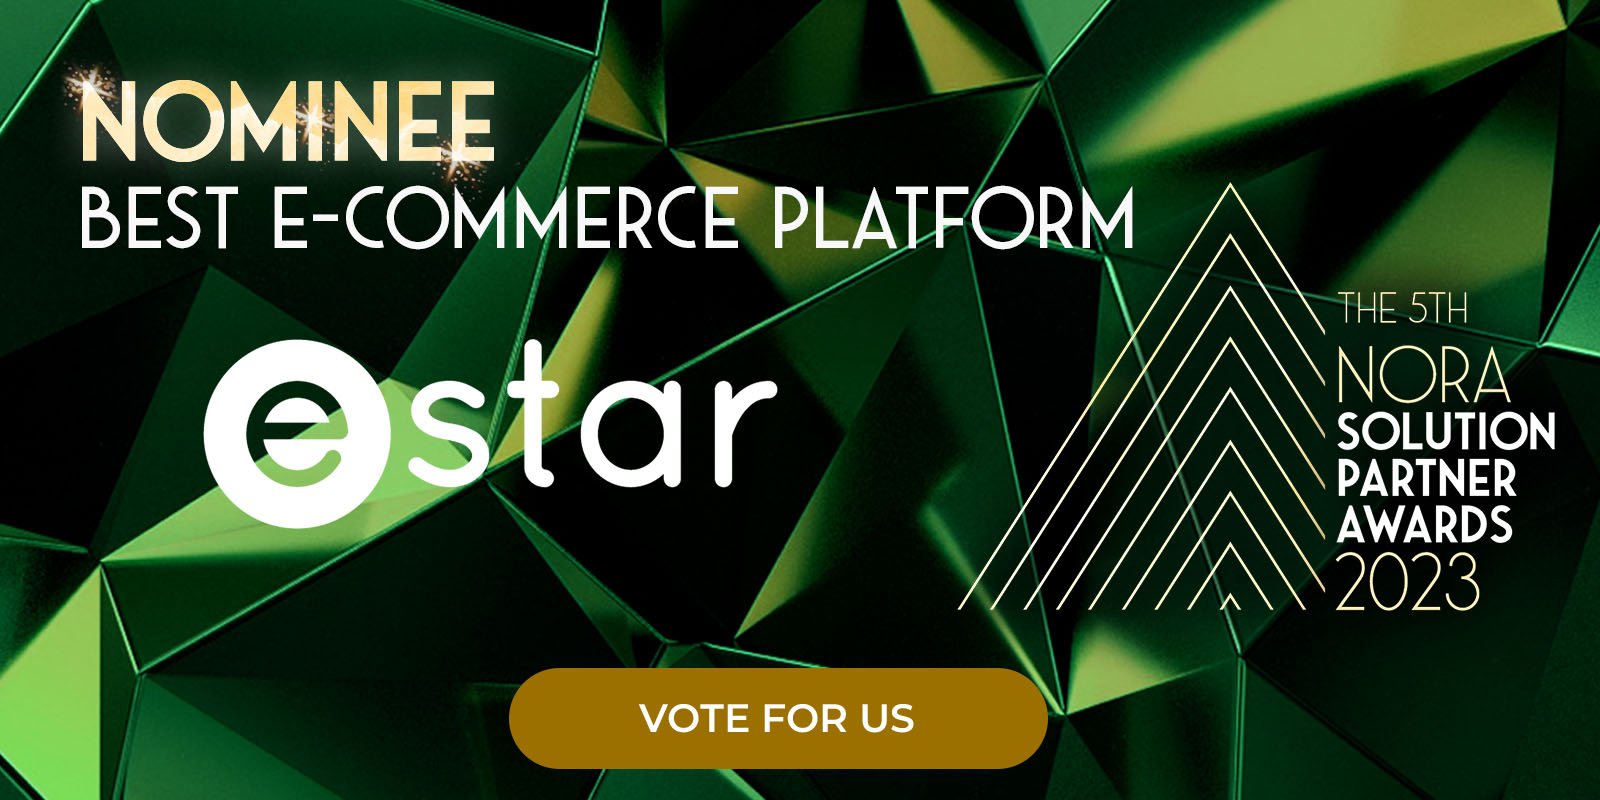 NORA_Awards_23_SP_Assets_estar_Best_ E-commerce_Platform_Linkedin_Vote_For_us